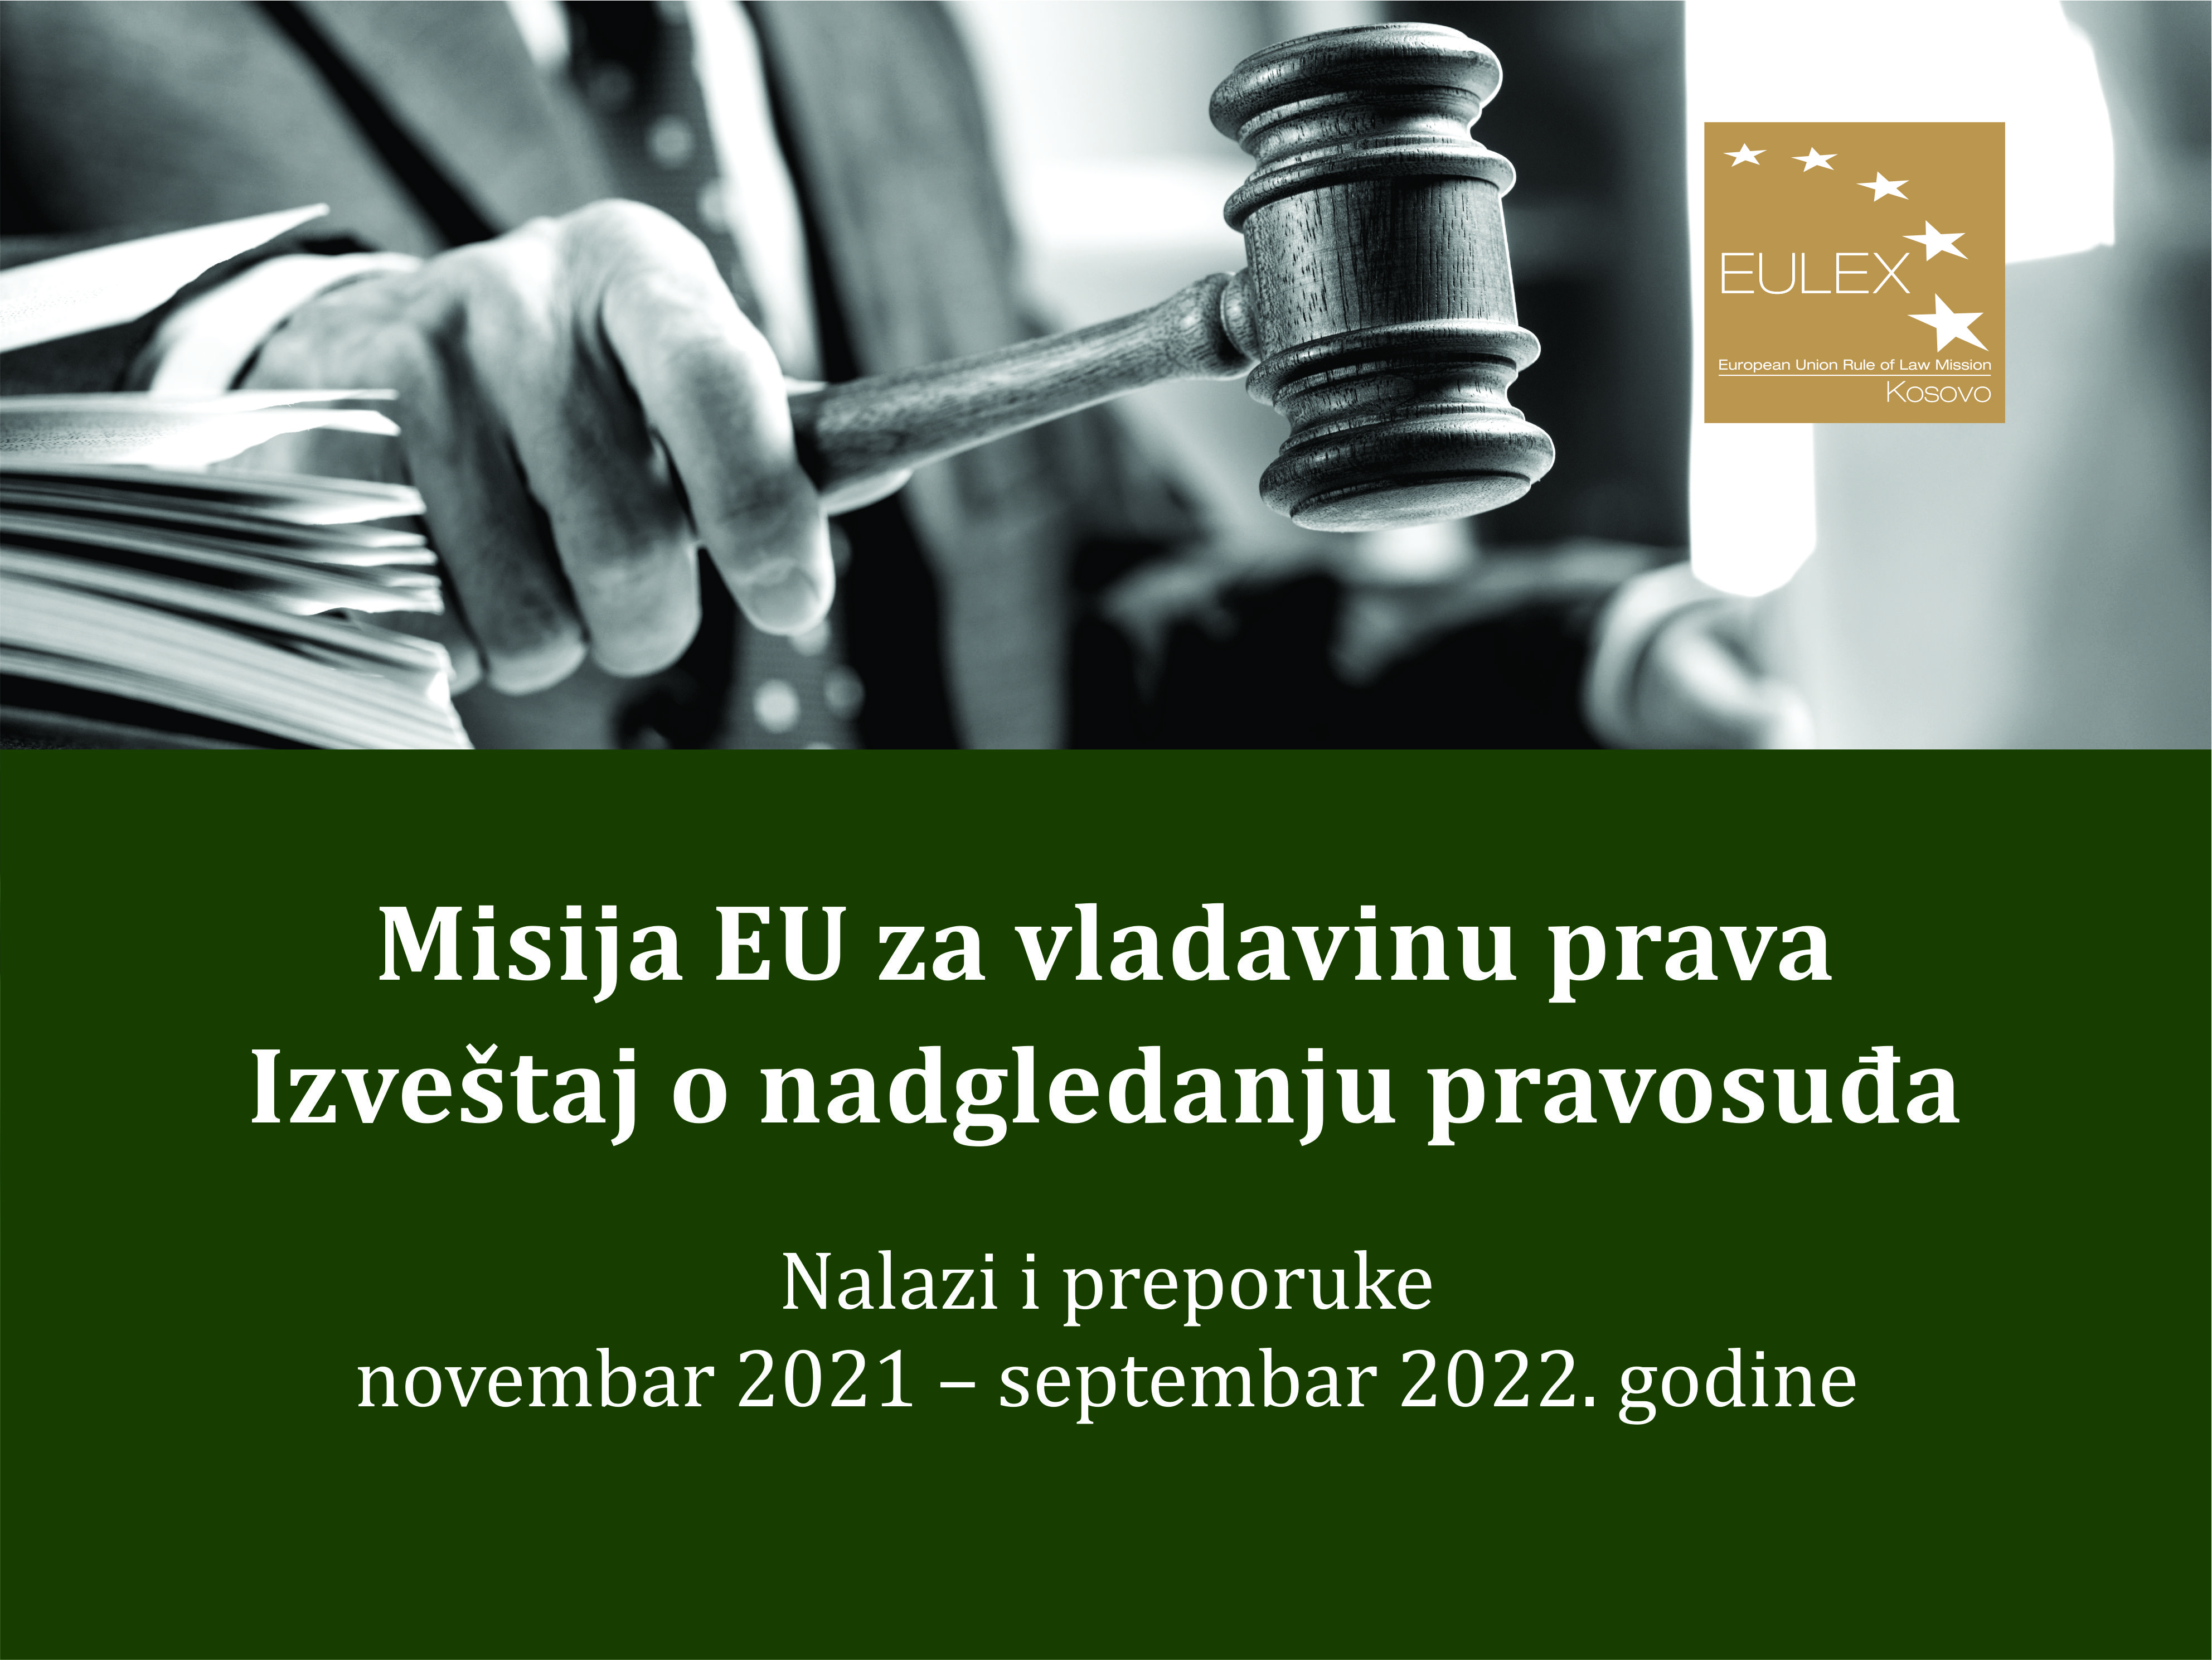 Izveštaj EULEX-a o nadgledanju pravosuđa